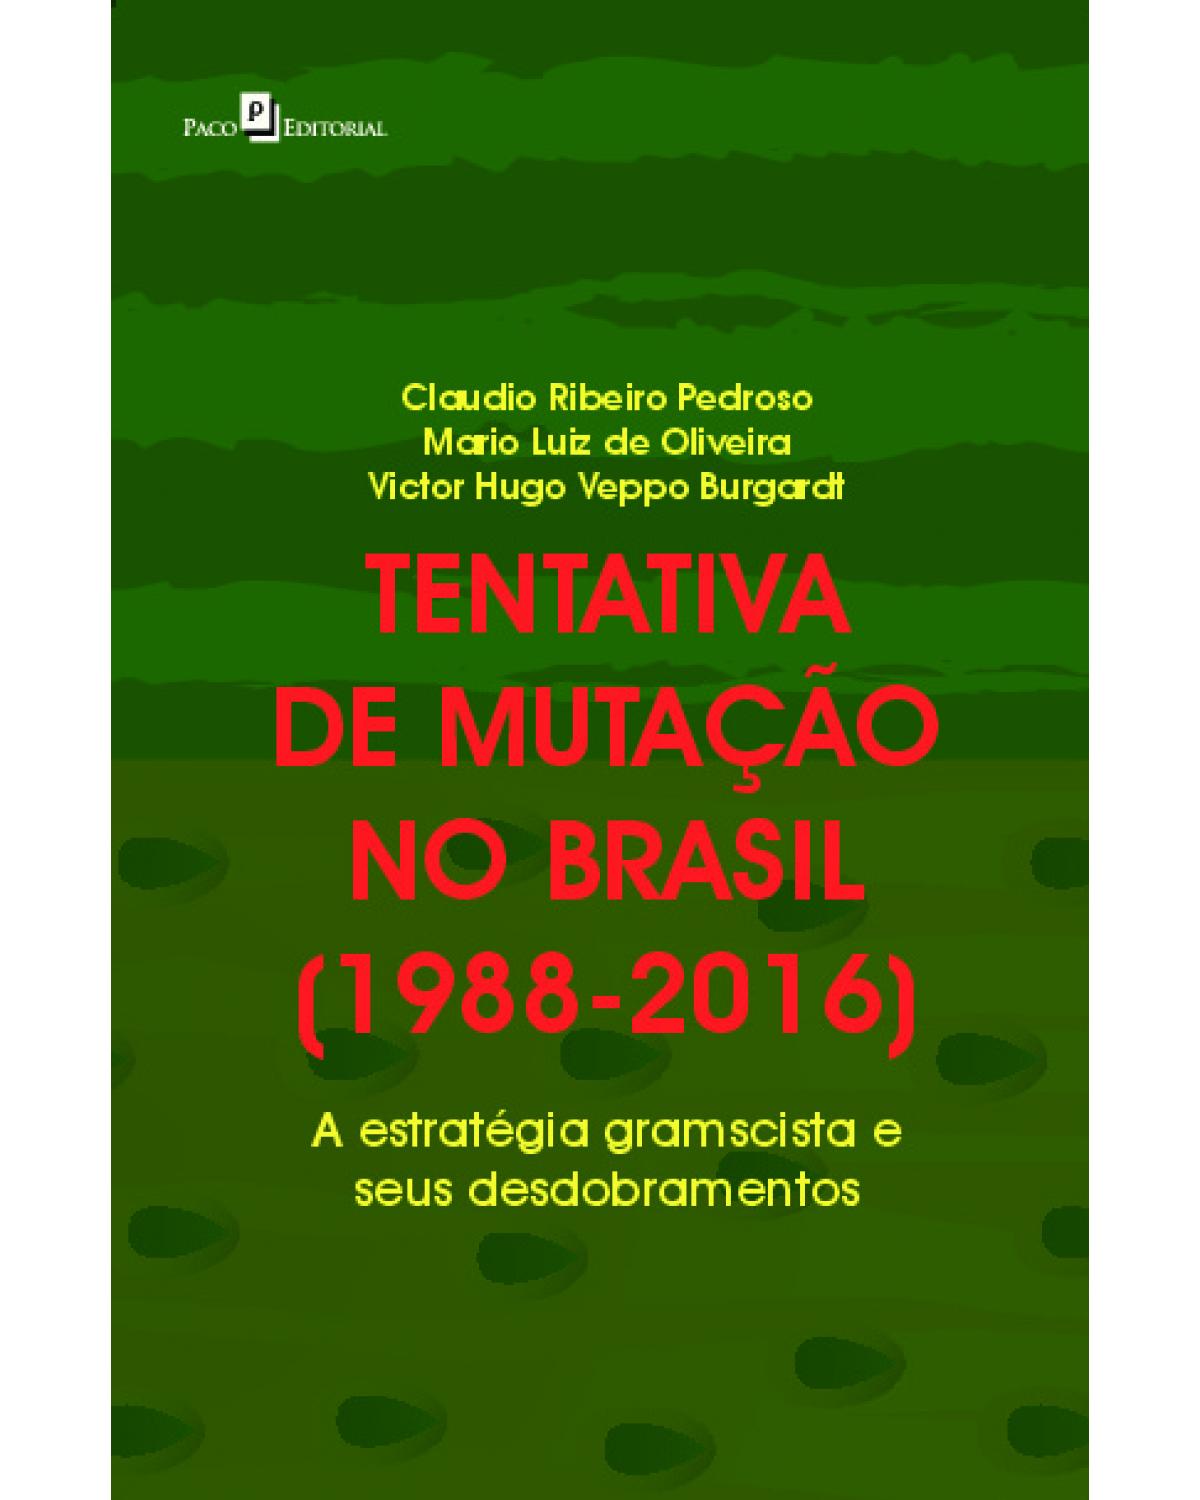 Tentativa de mutação no Brasil (1988-2016) - a estratégia gramscista e seus desdobramentos - 1ª Edição | 2021